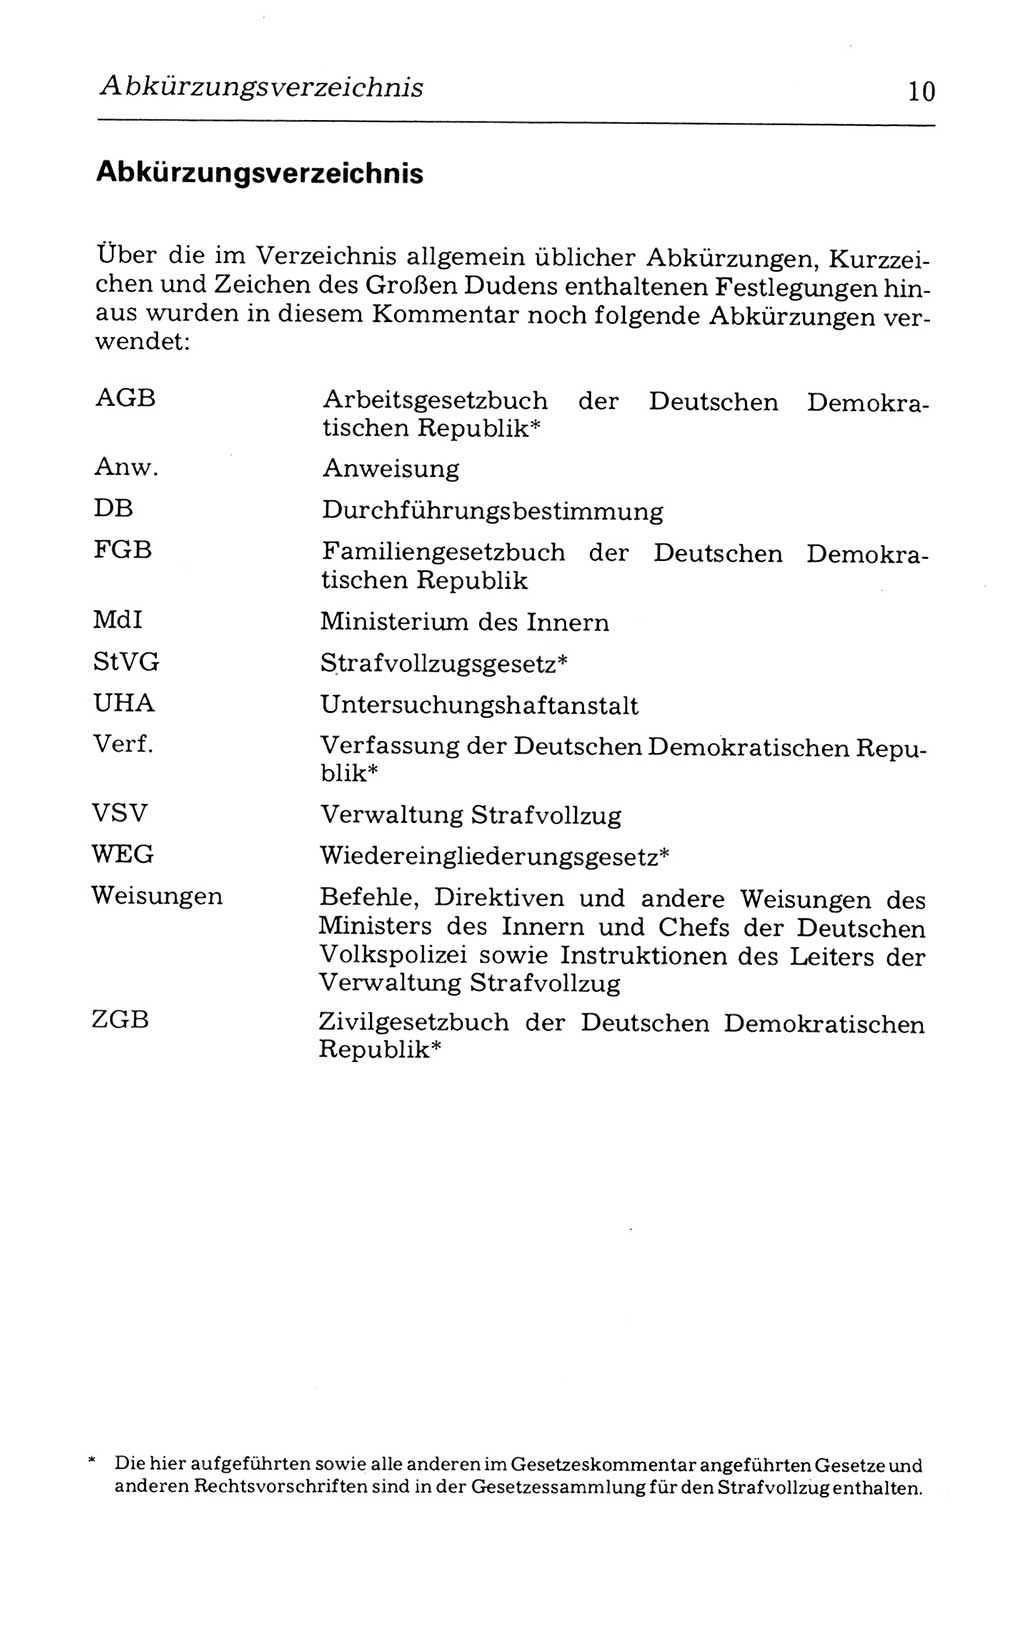 Kommentar zum Strafvollzugsgesetz [(StVG) Deutsche Demokratische Republik (DDR)] 1980, Seite 10 (Komm. StVG DDR 1980, S. 10)